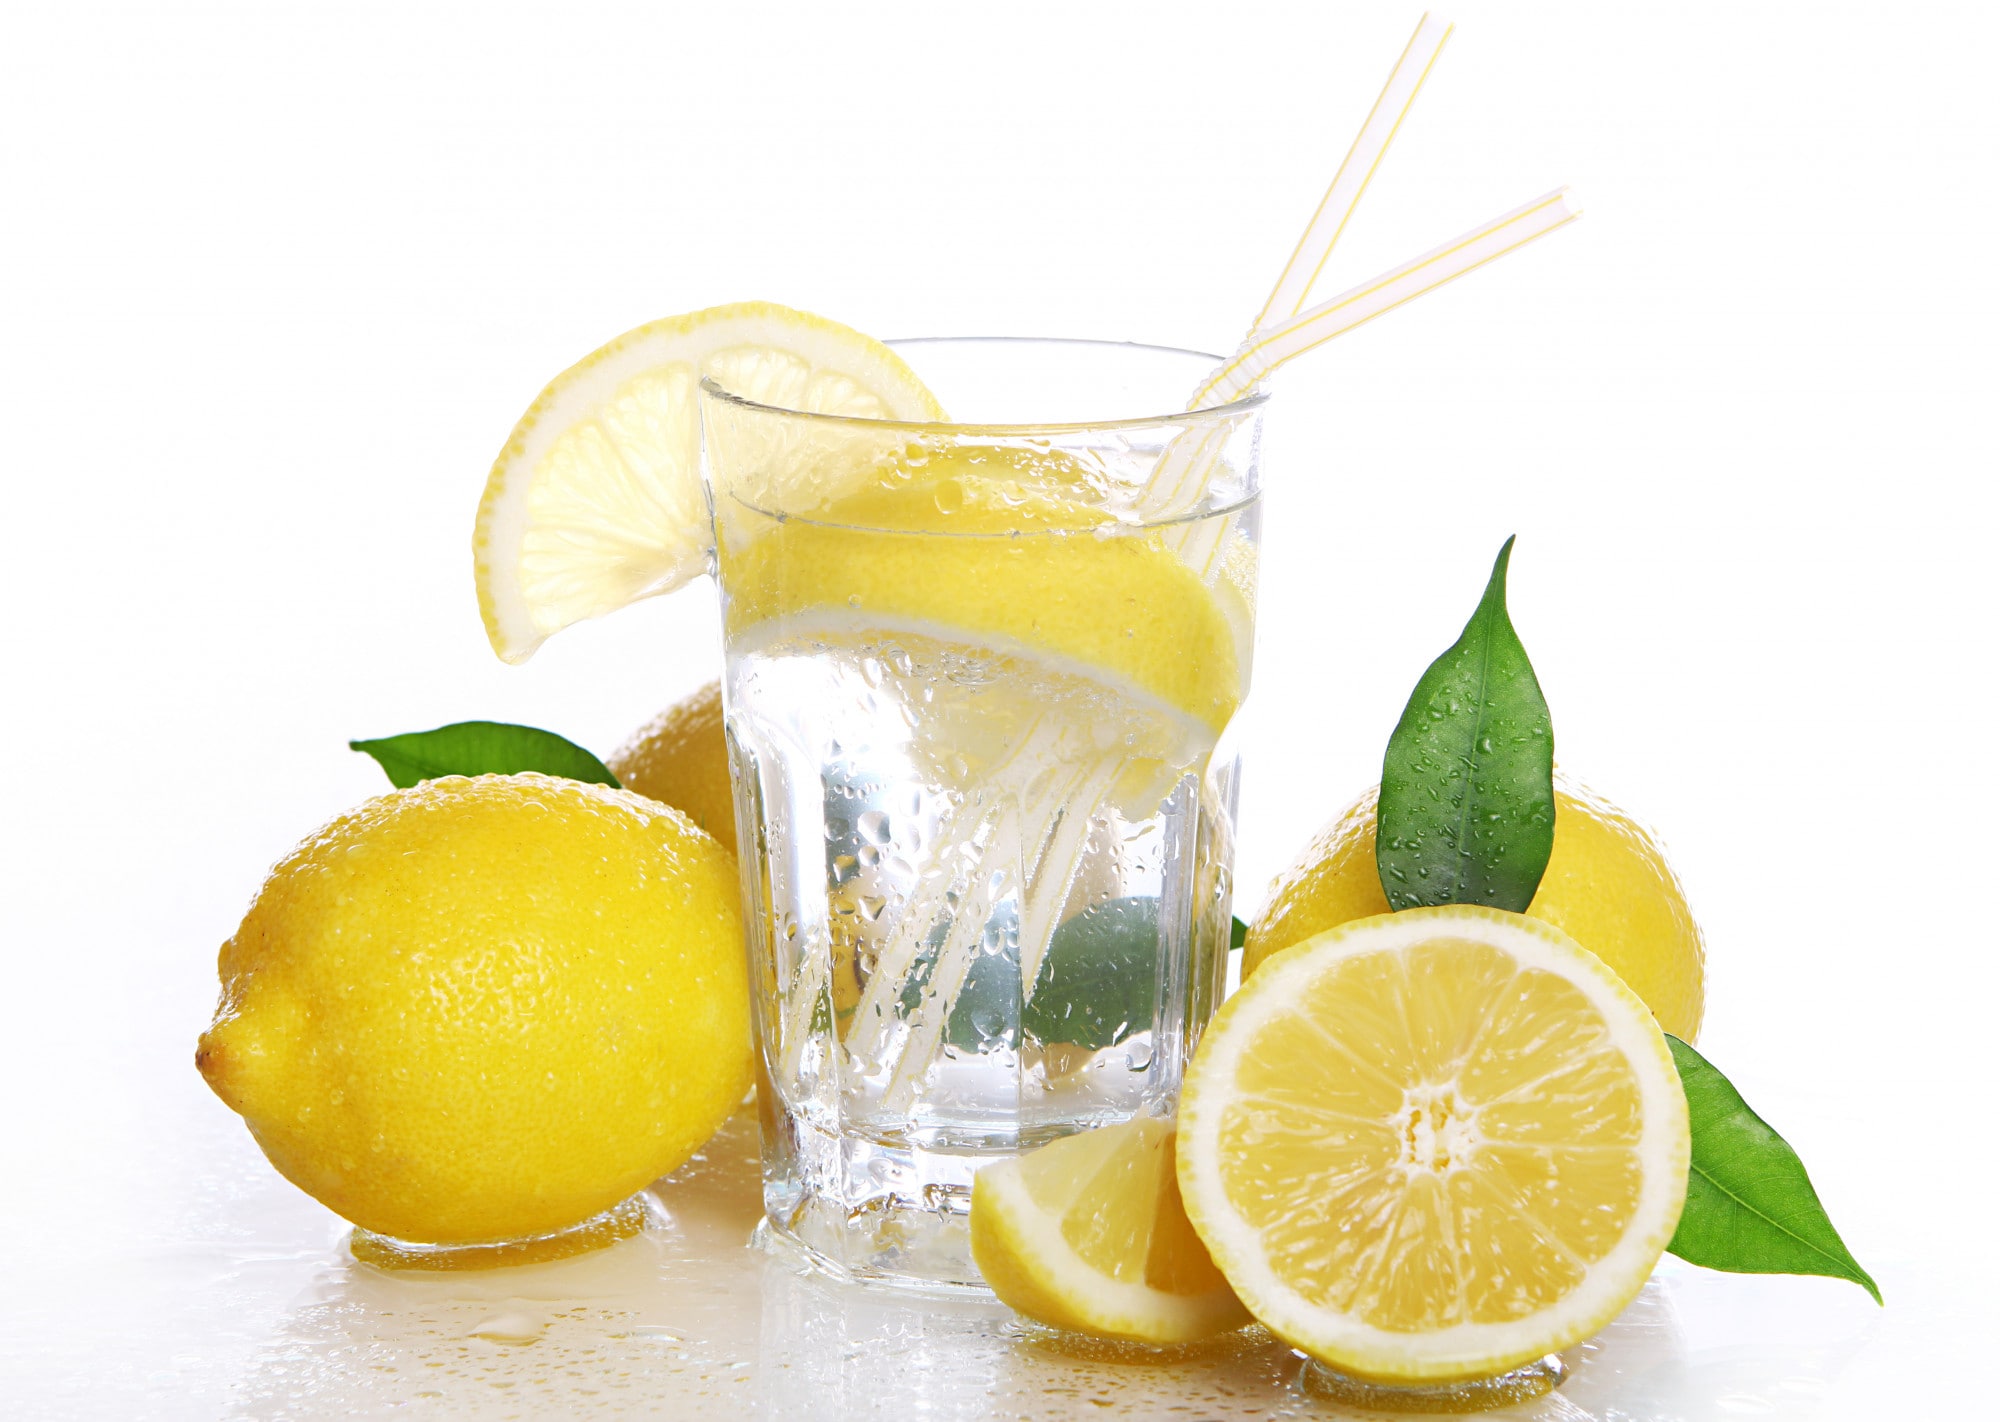 Limonlu Su İçmek: Faydaları ve Zararları Nelerdir?